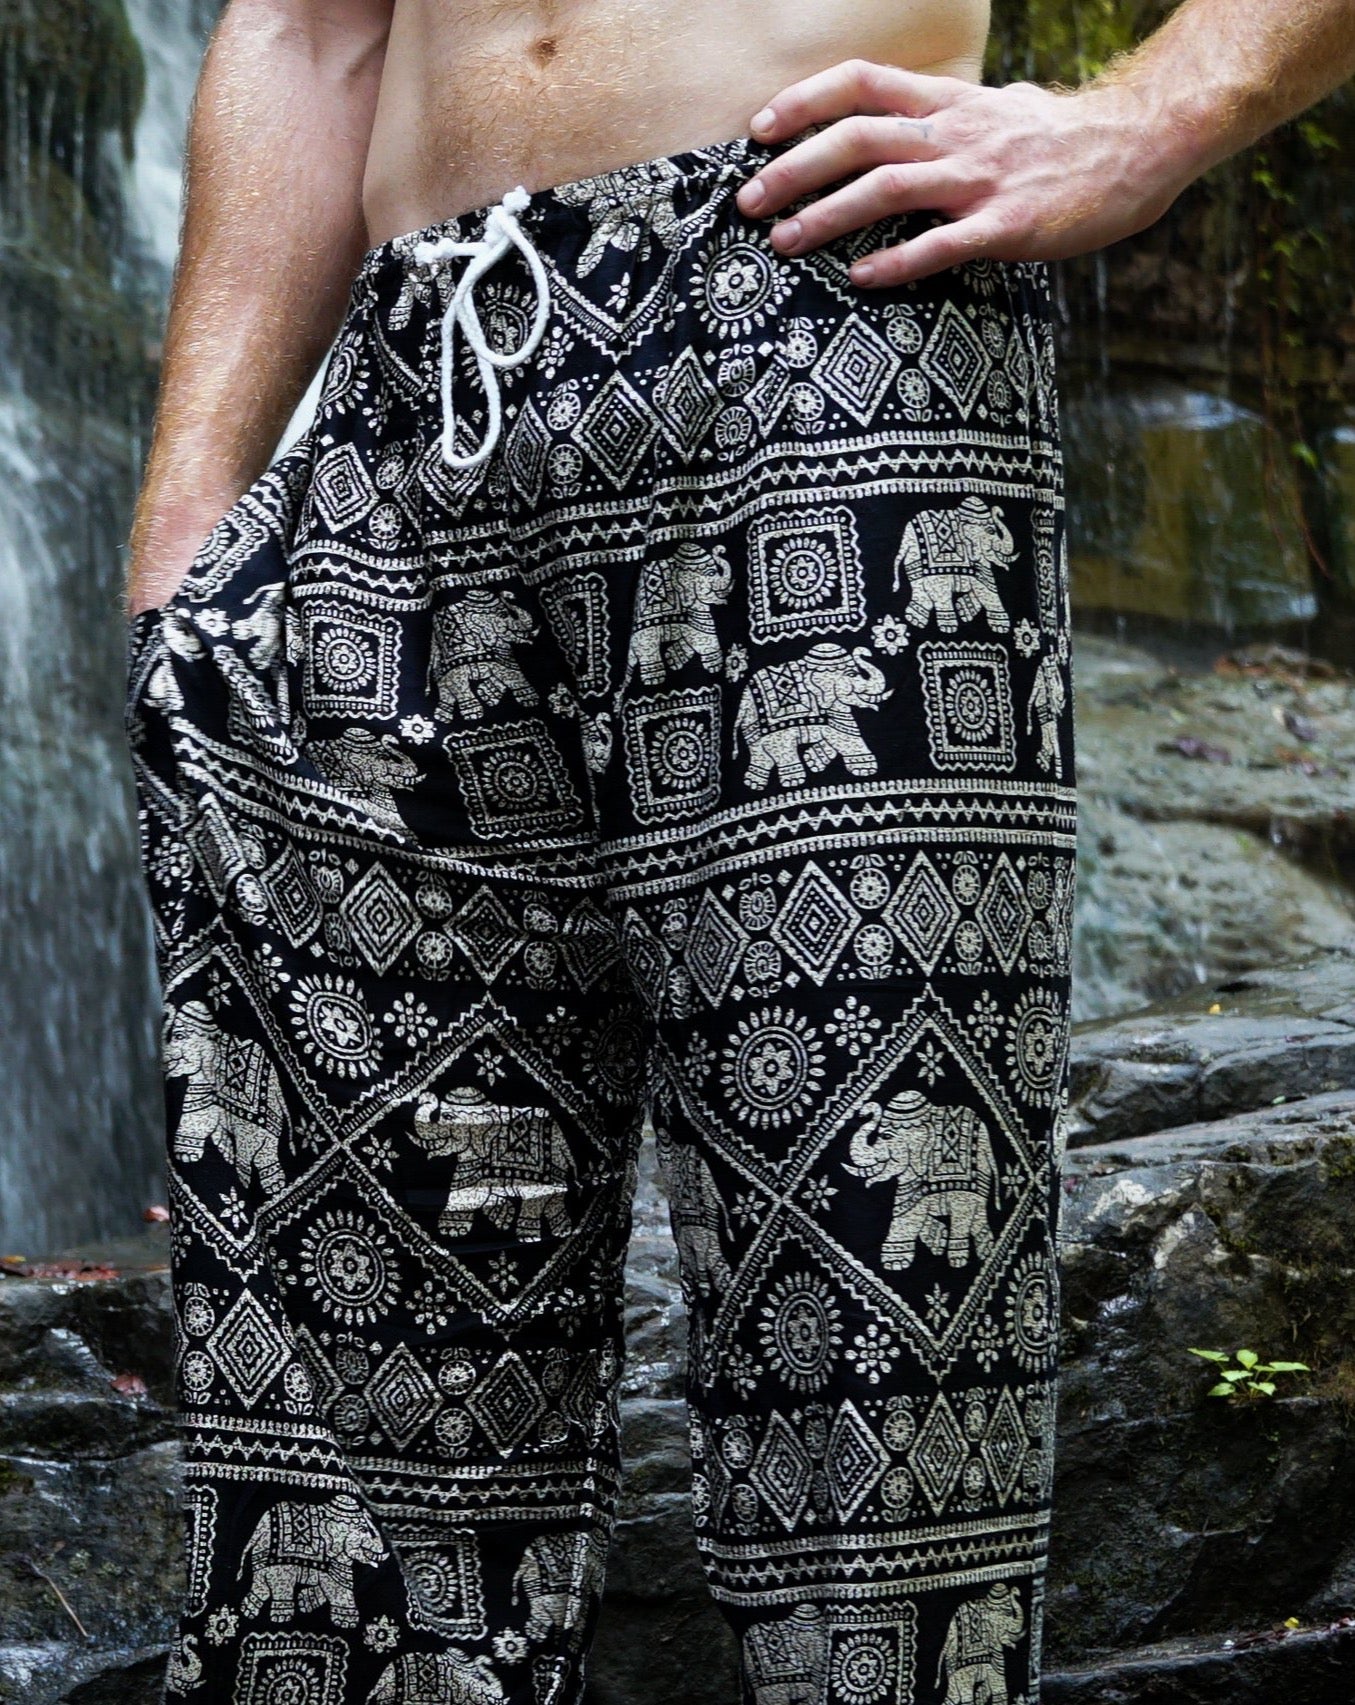 Bangkokpants Women's Yoga Clothing Elephant Pants Black US Size 0-12 |  Elephant Things